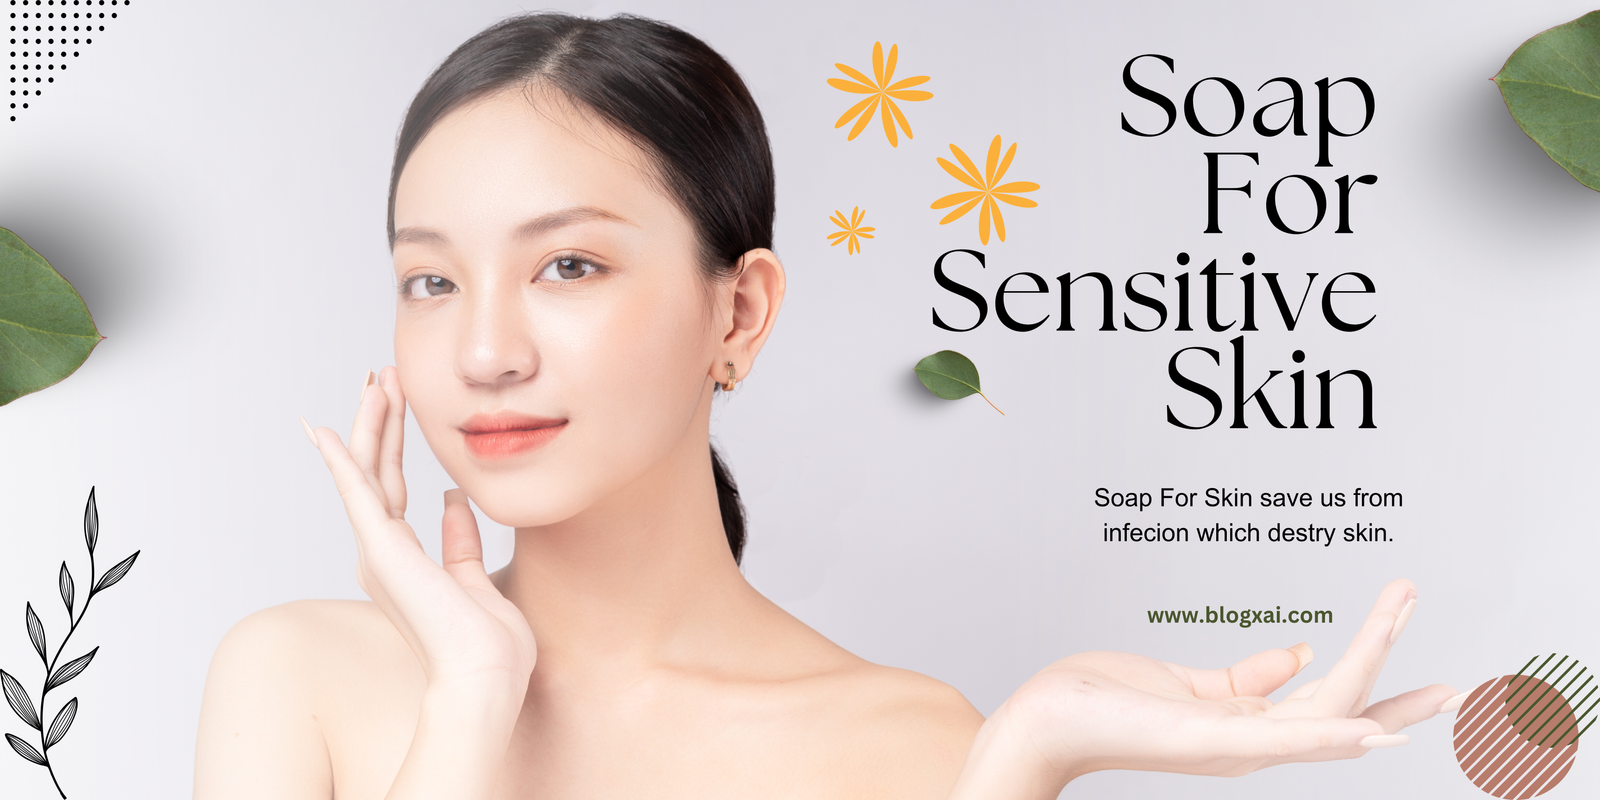 Soap For Sensitive Skin